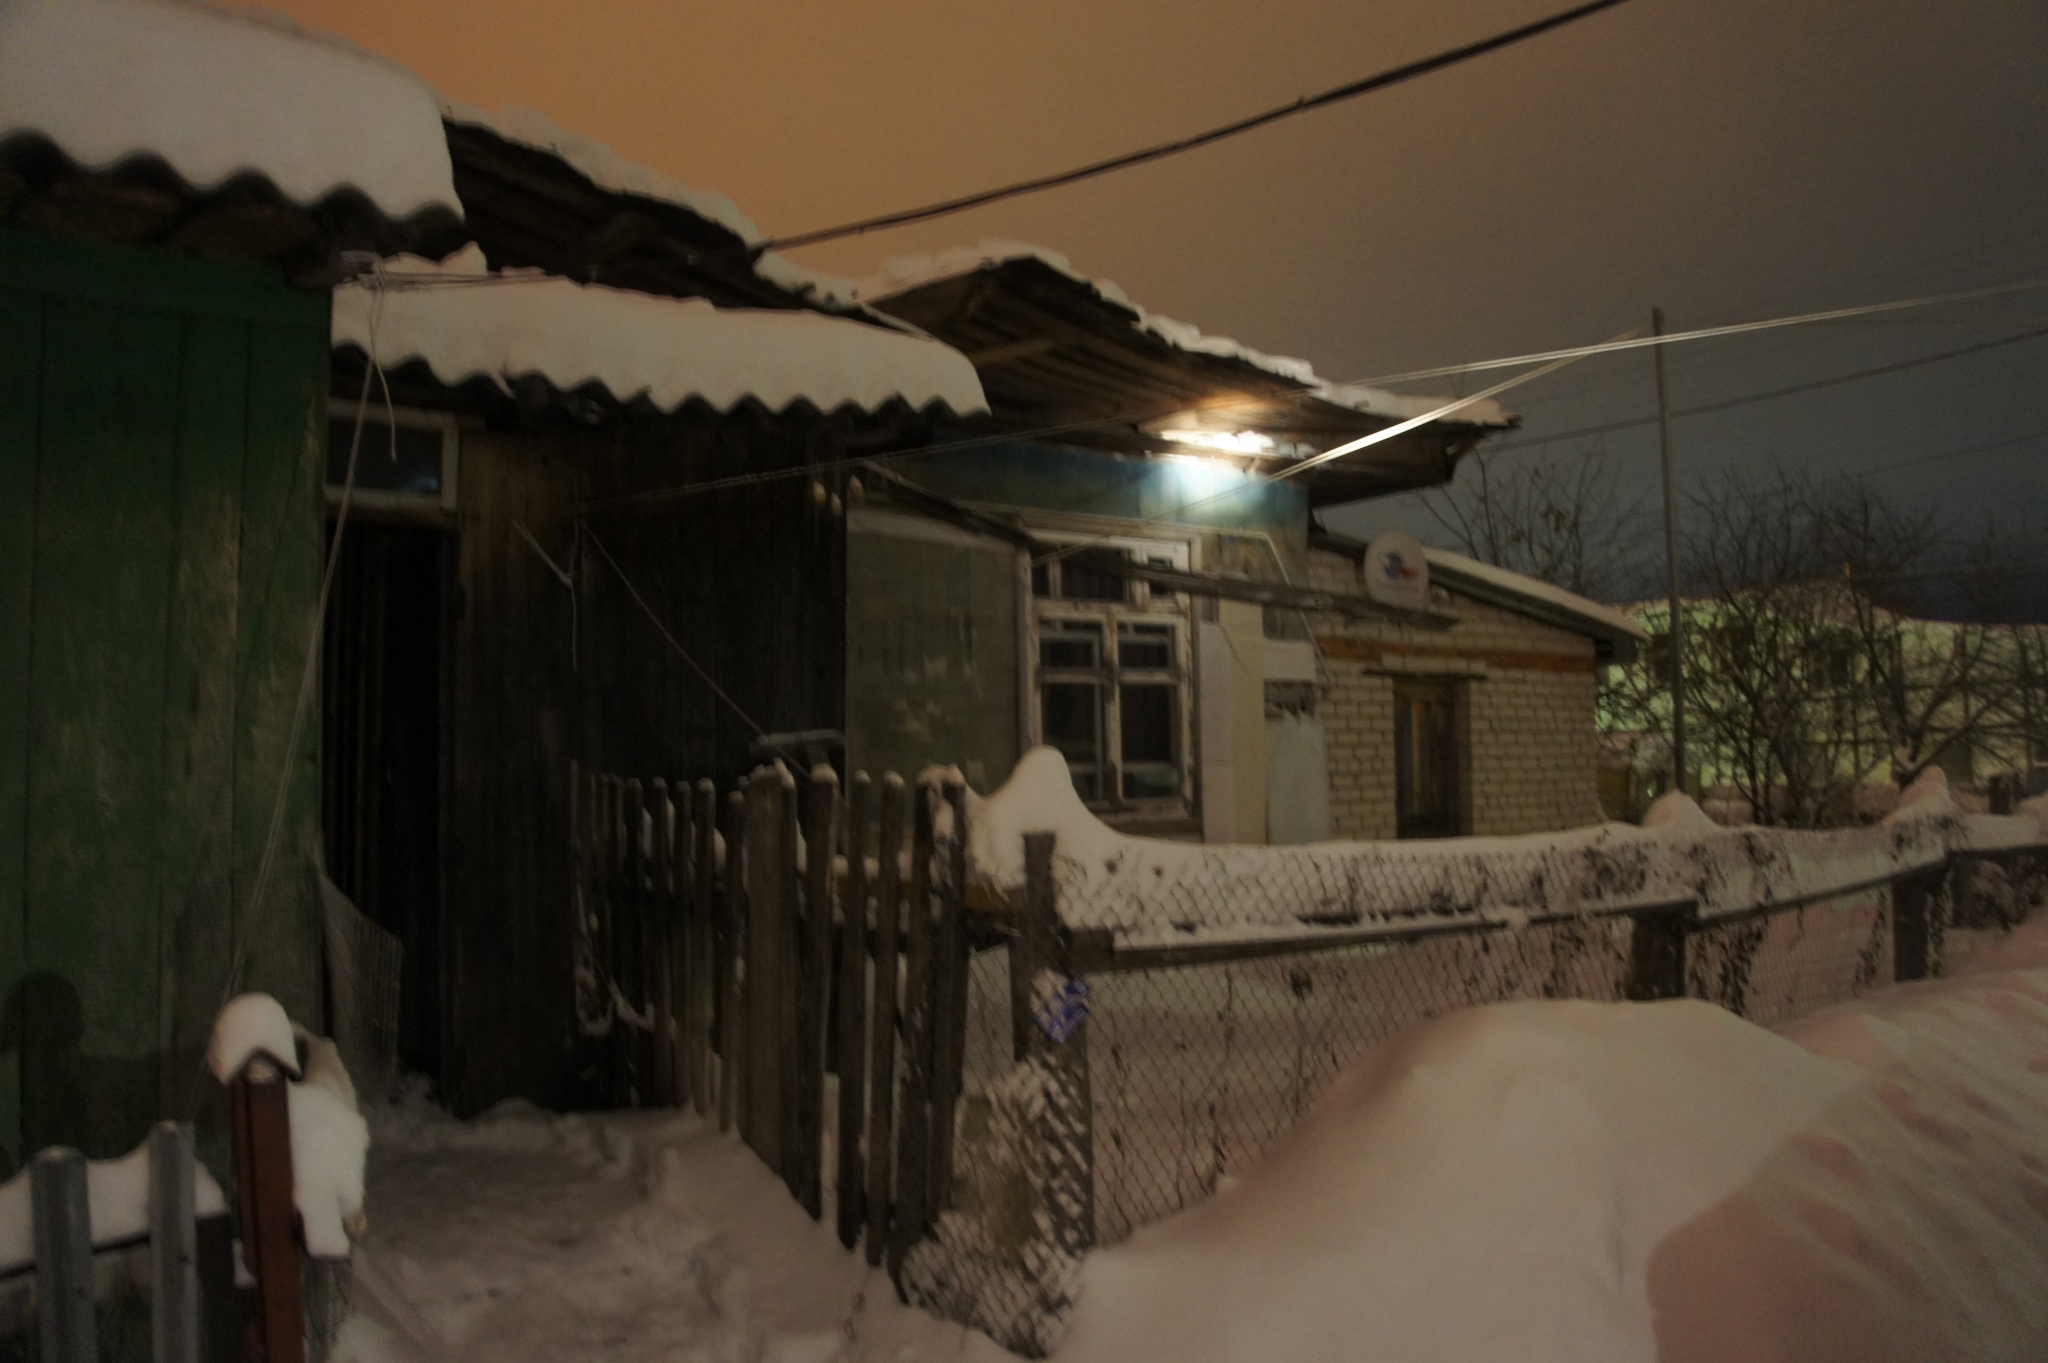 Из-за сильного снегопада в Йошкар-Оле обрушилась крыша жилого дома